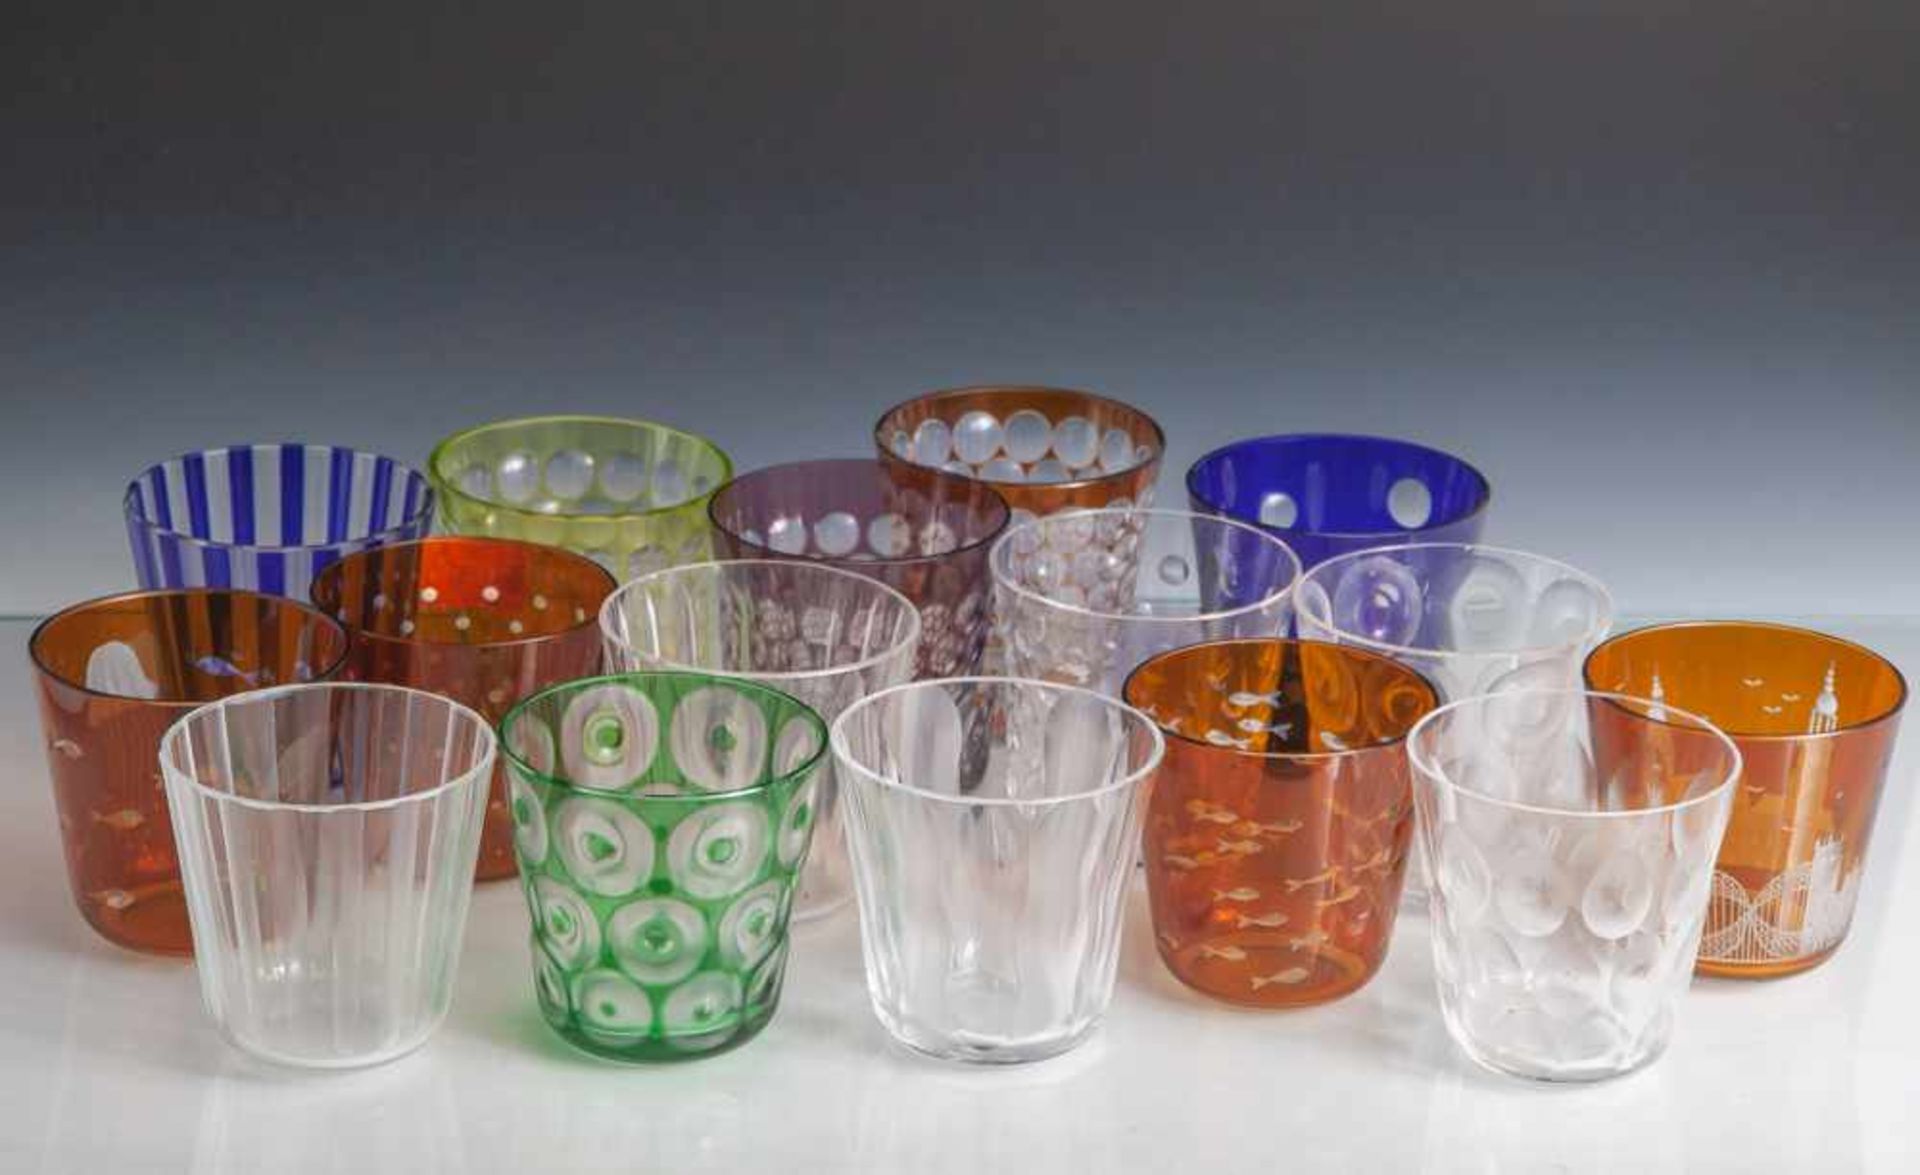 16 Sammelgläser, Rotter Glas, Lübeck, farbloses Kristallglas mit unterschiedlichen Dekoren und